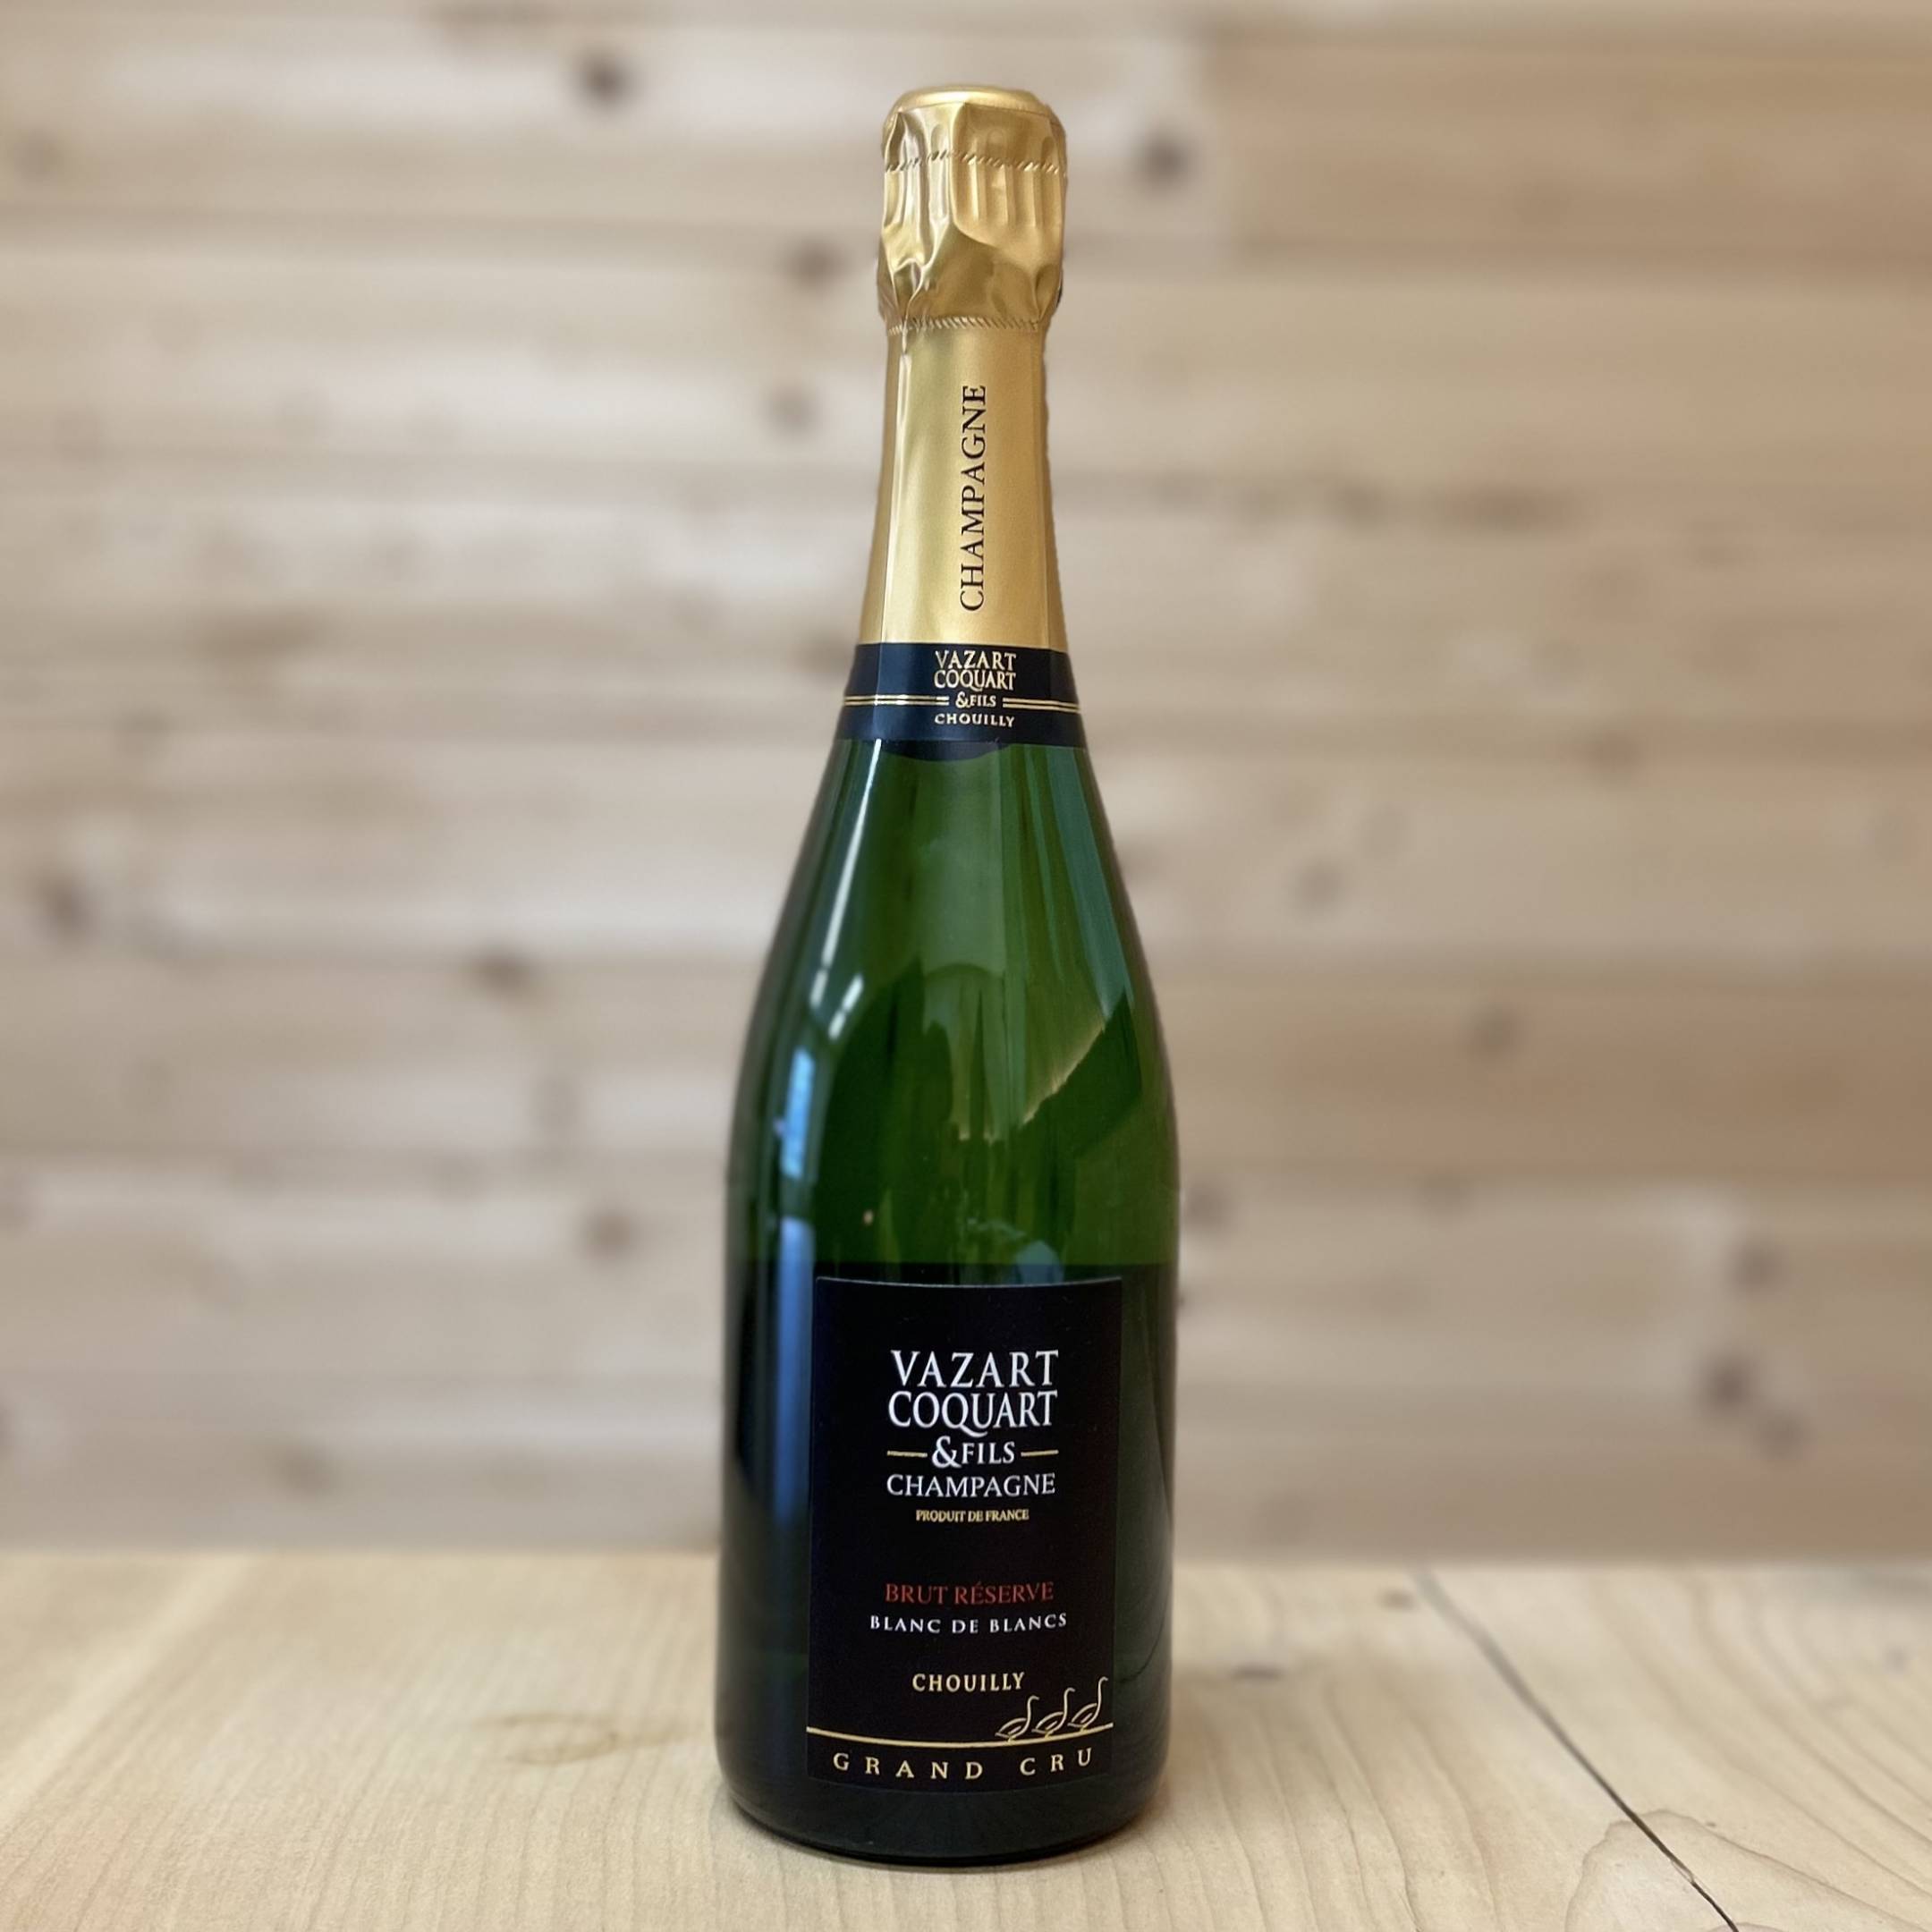 Vazart-Coquart Champagne Reserve Grand Cru